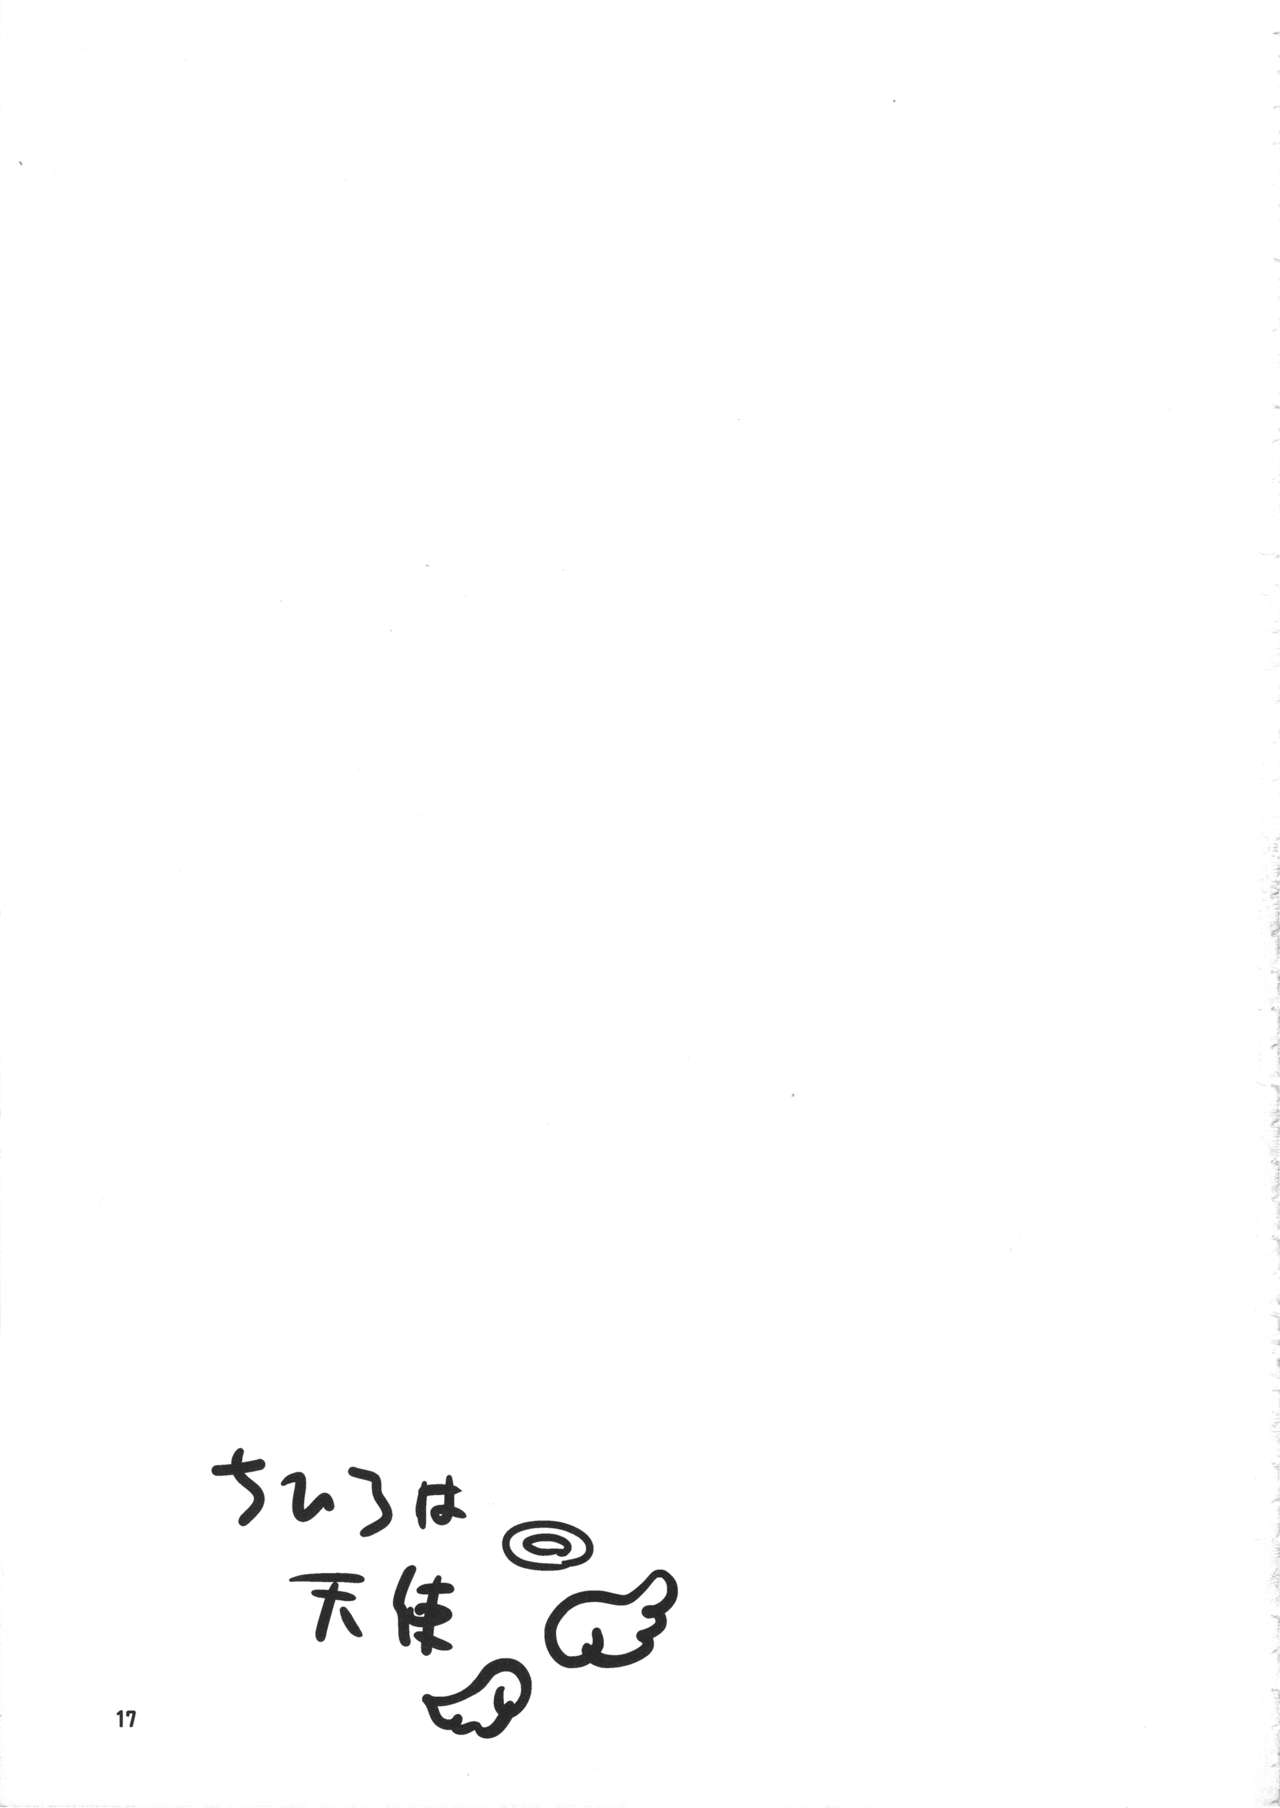 (COMIC1☆9) [Teabreak Scriptea (てぃー)] プロデューサーマネージメント (アイドルマスター シンデレラガールズ)